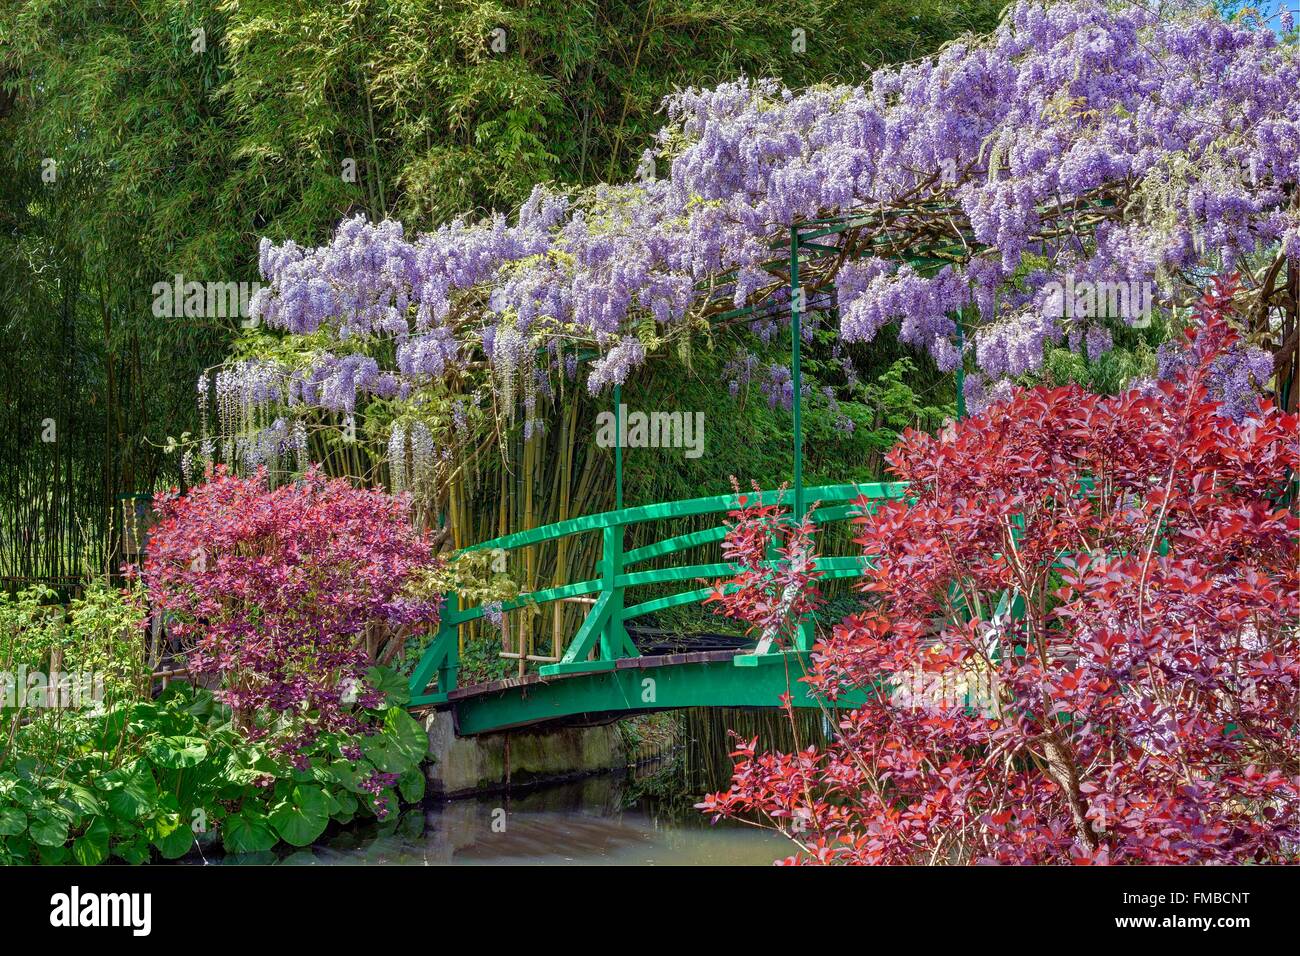 La France, l'Eure, Giverny, Claude Monet, le jardin japonais de glycine Banque D'Images